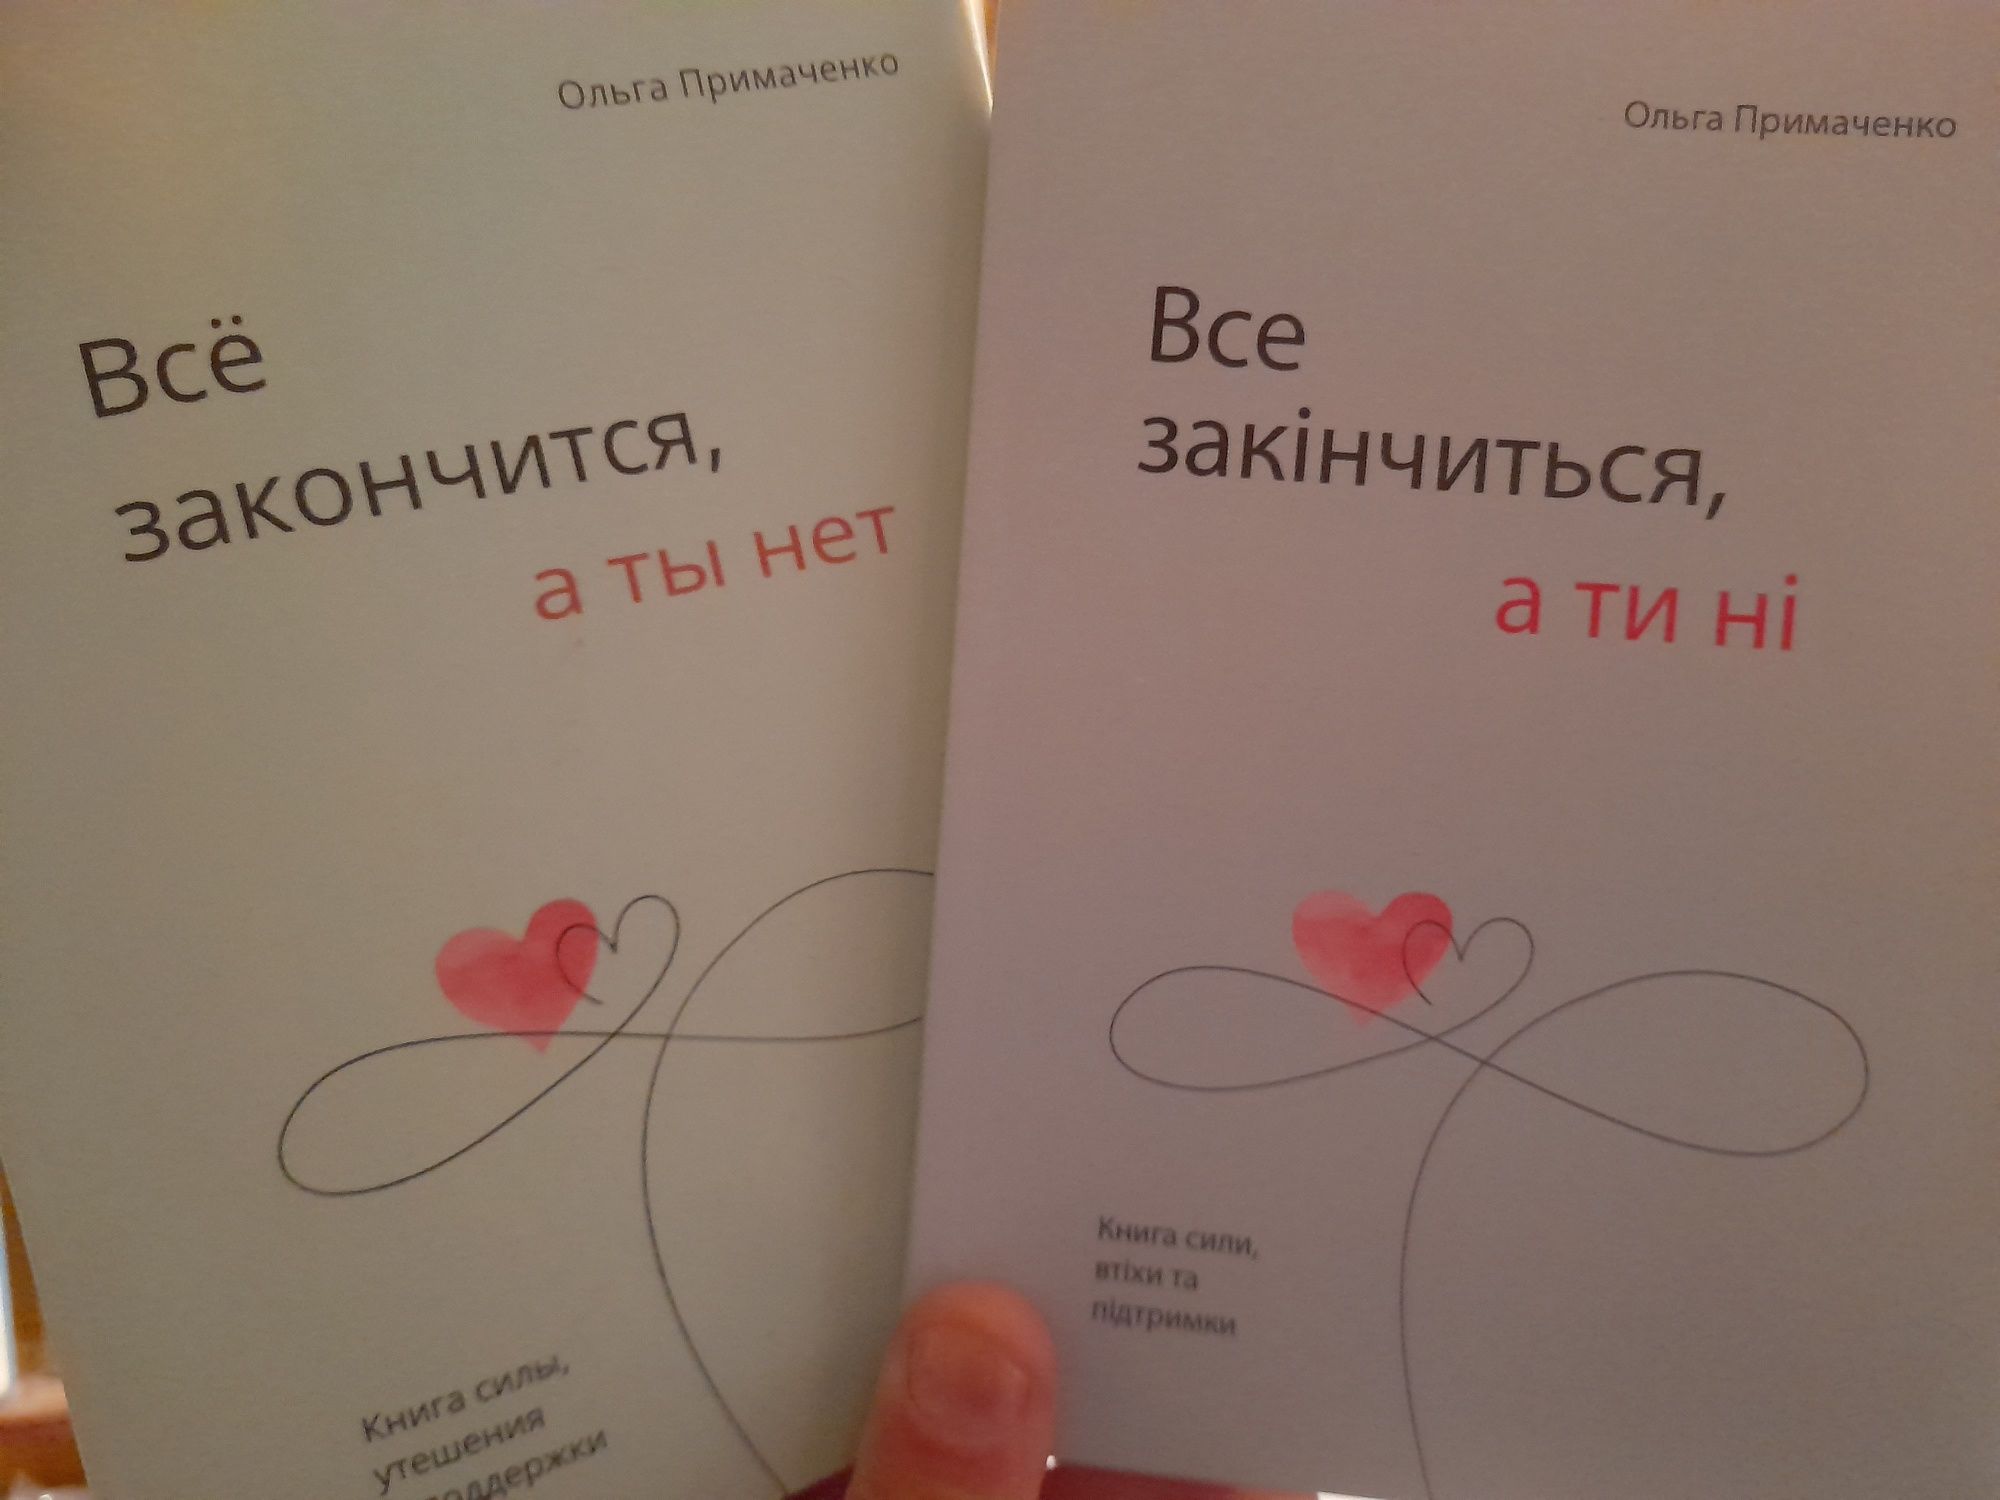 Ольга Примаченко "Все закончится, а ты нет", книга силы, утешения и по